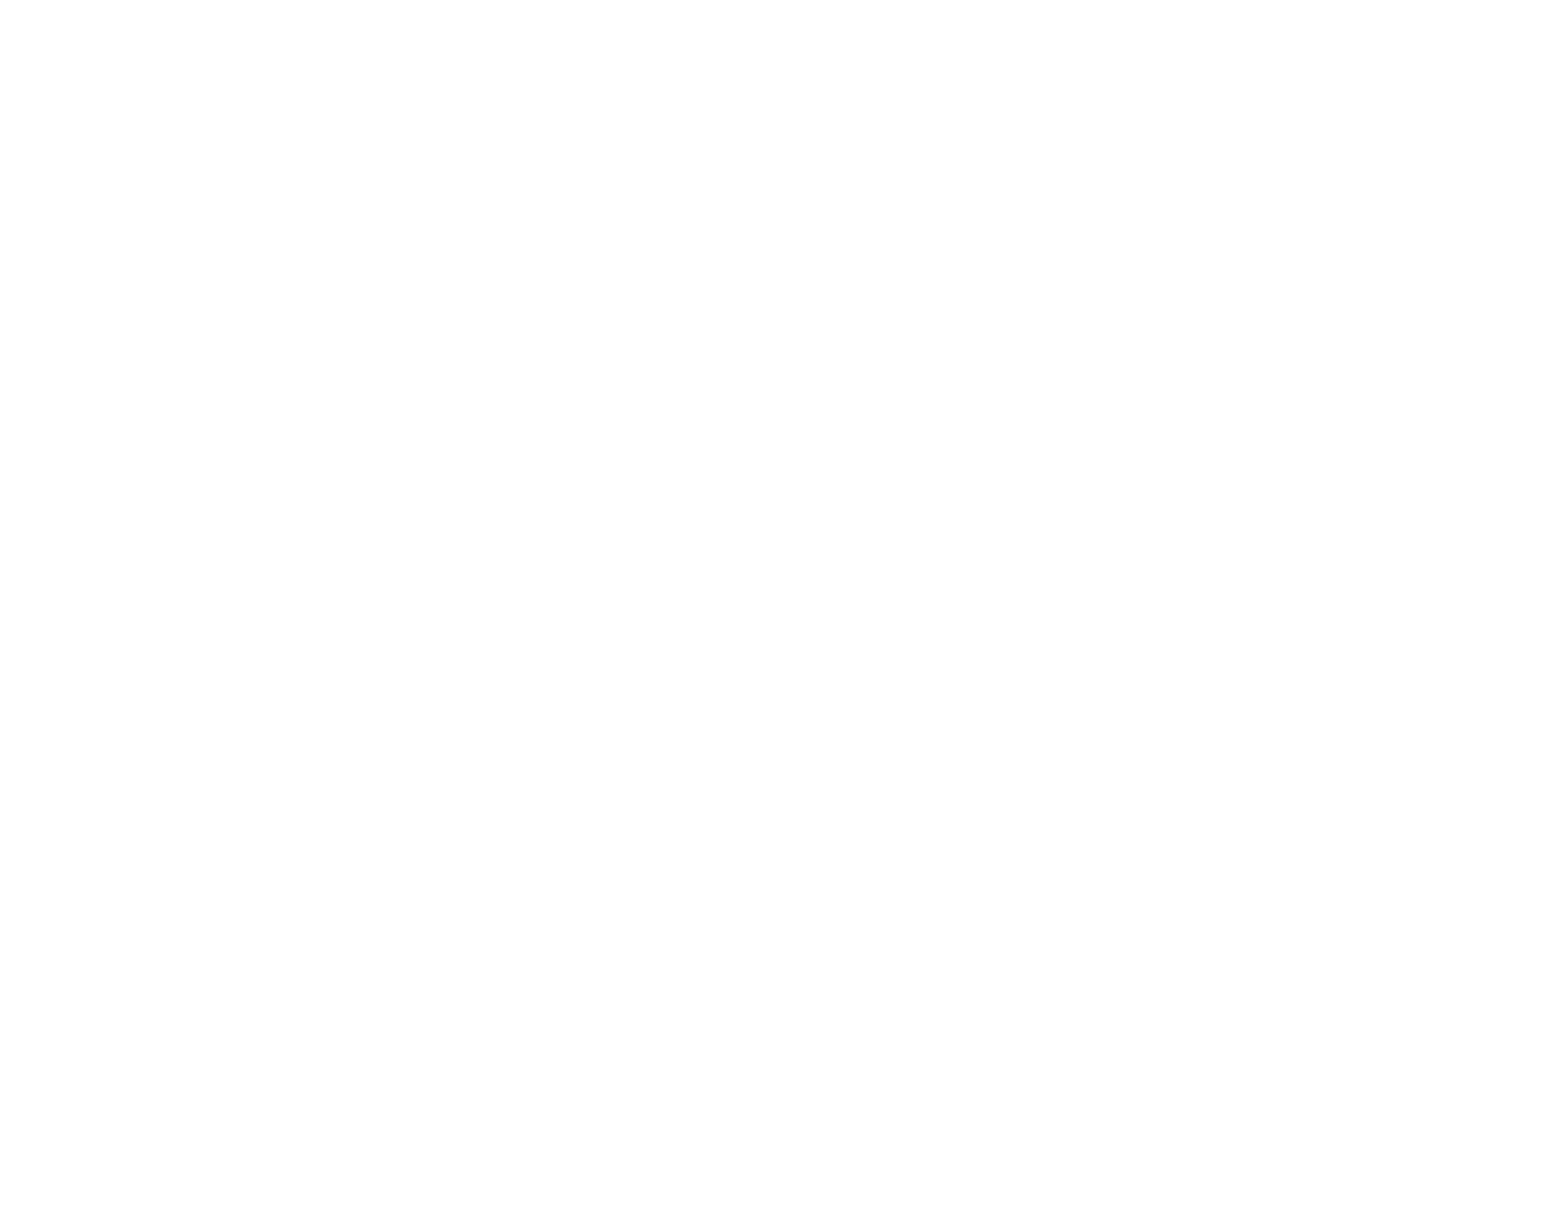 KBC logo pour fonds sombres (PNG transparent)